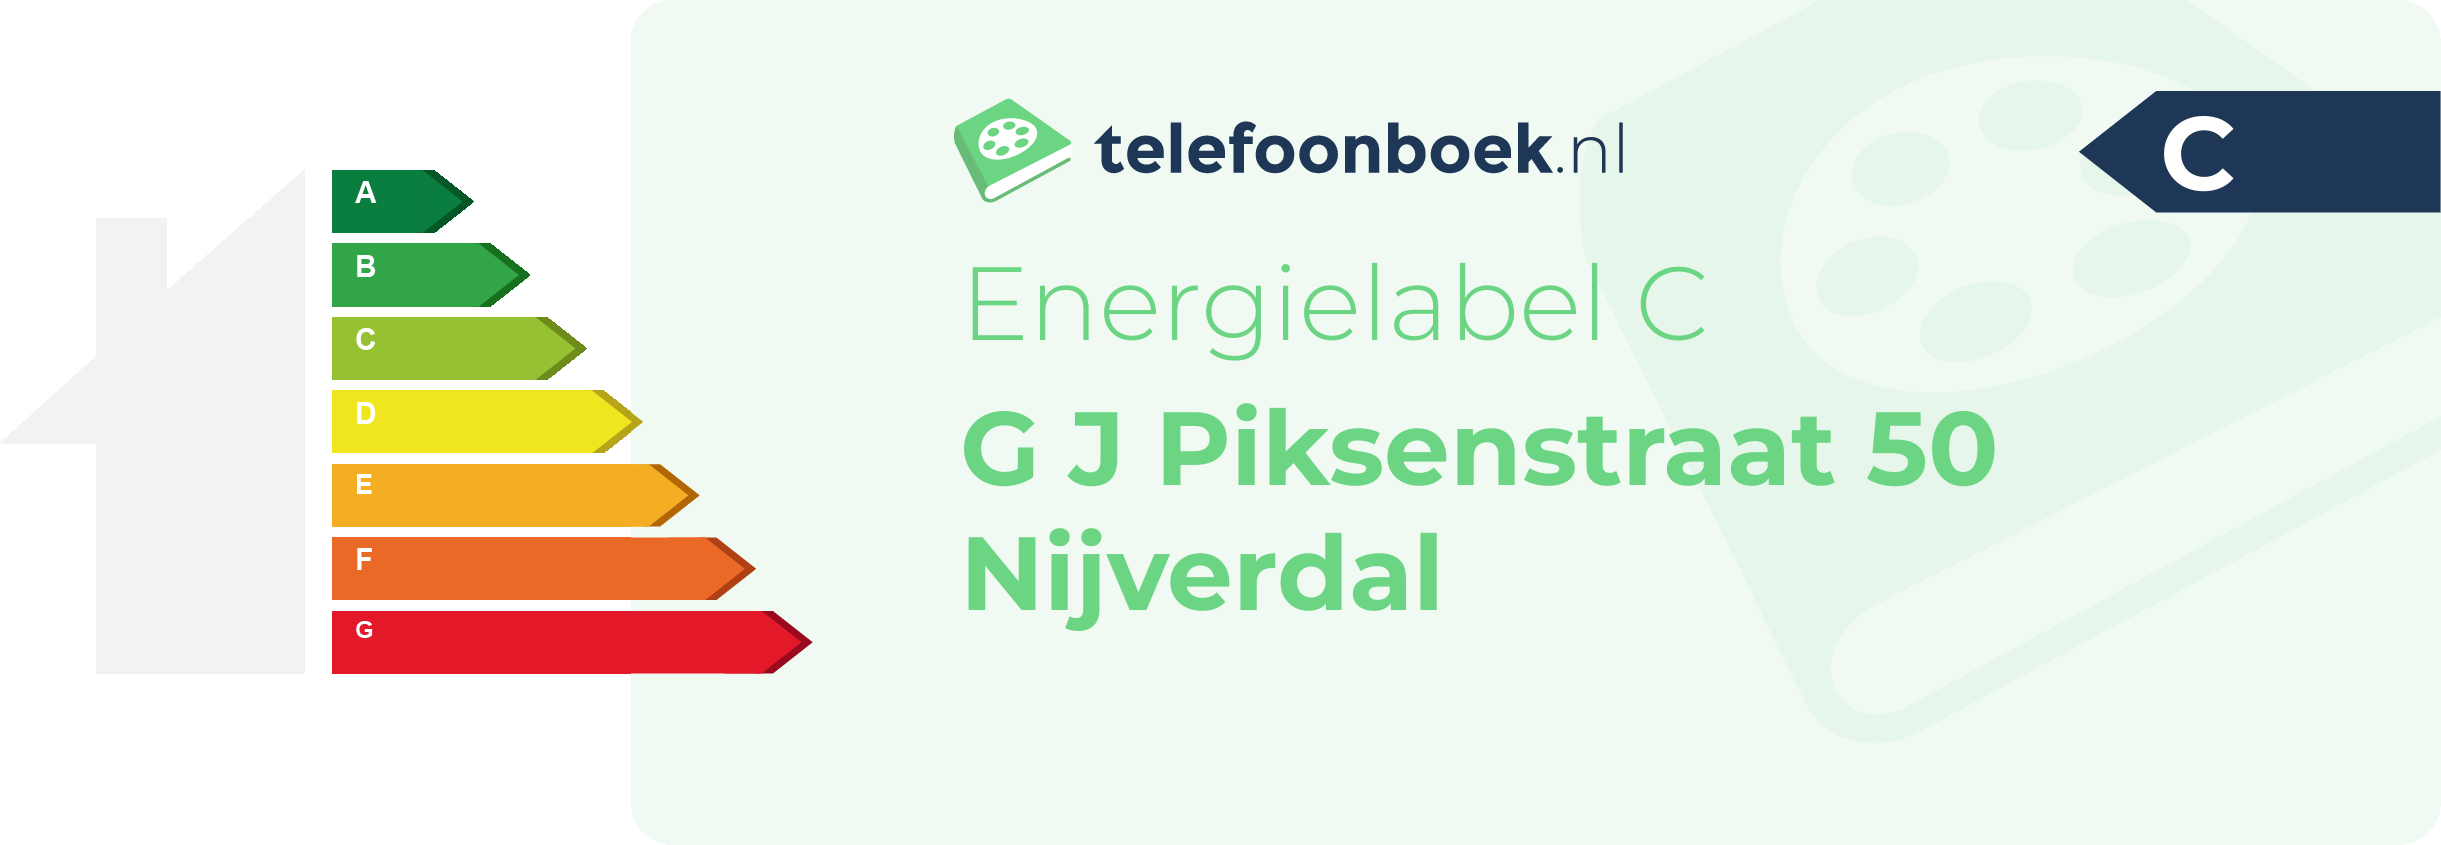 Energielabel G J Piksenstraat 50 Nijverdal